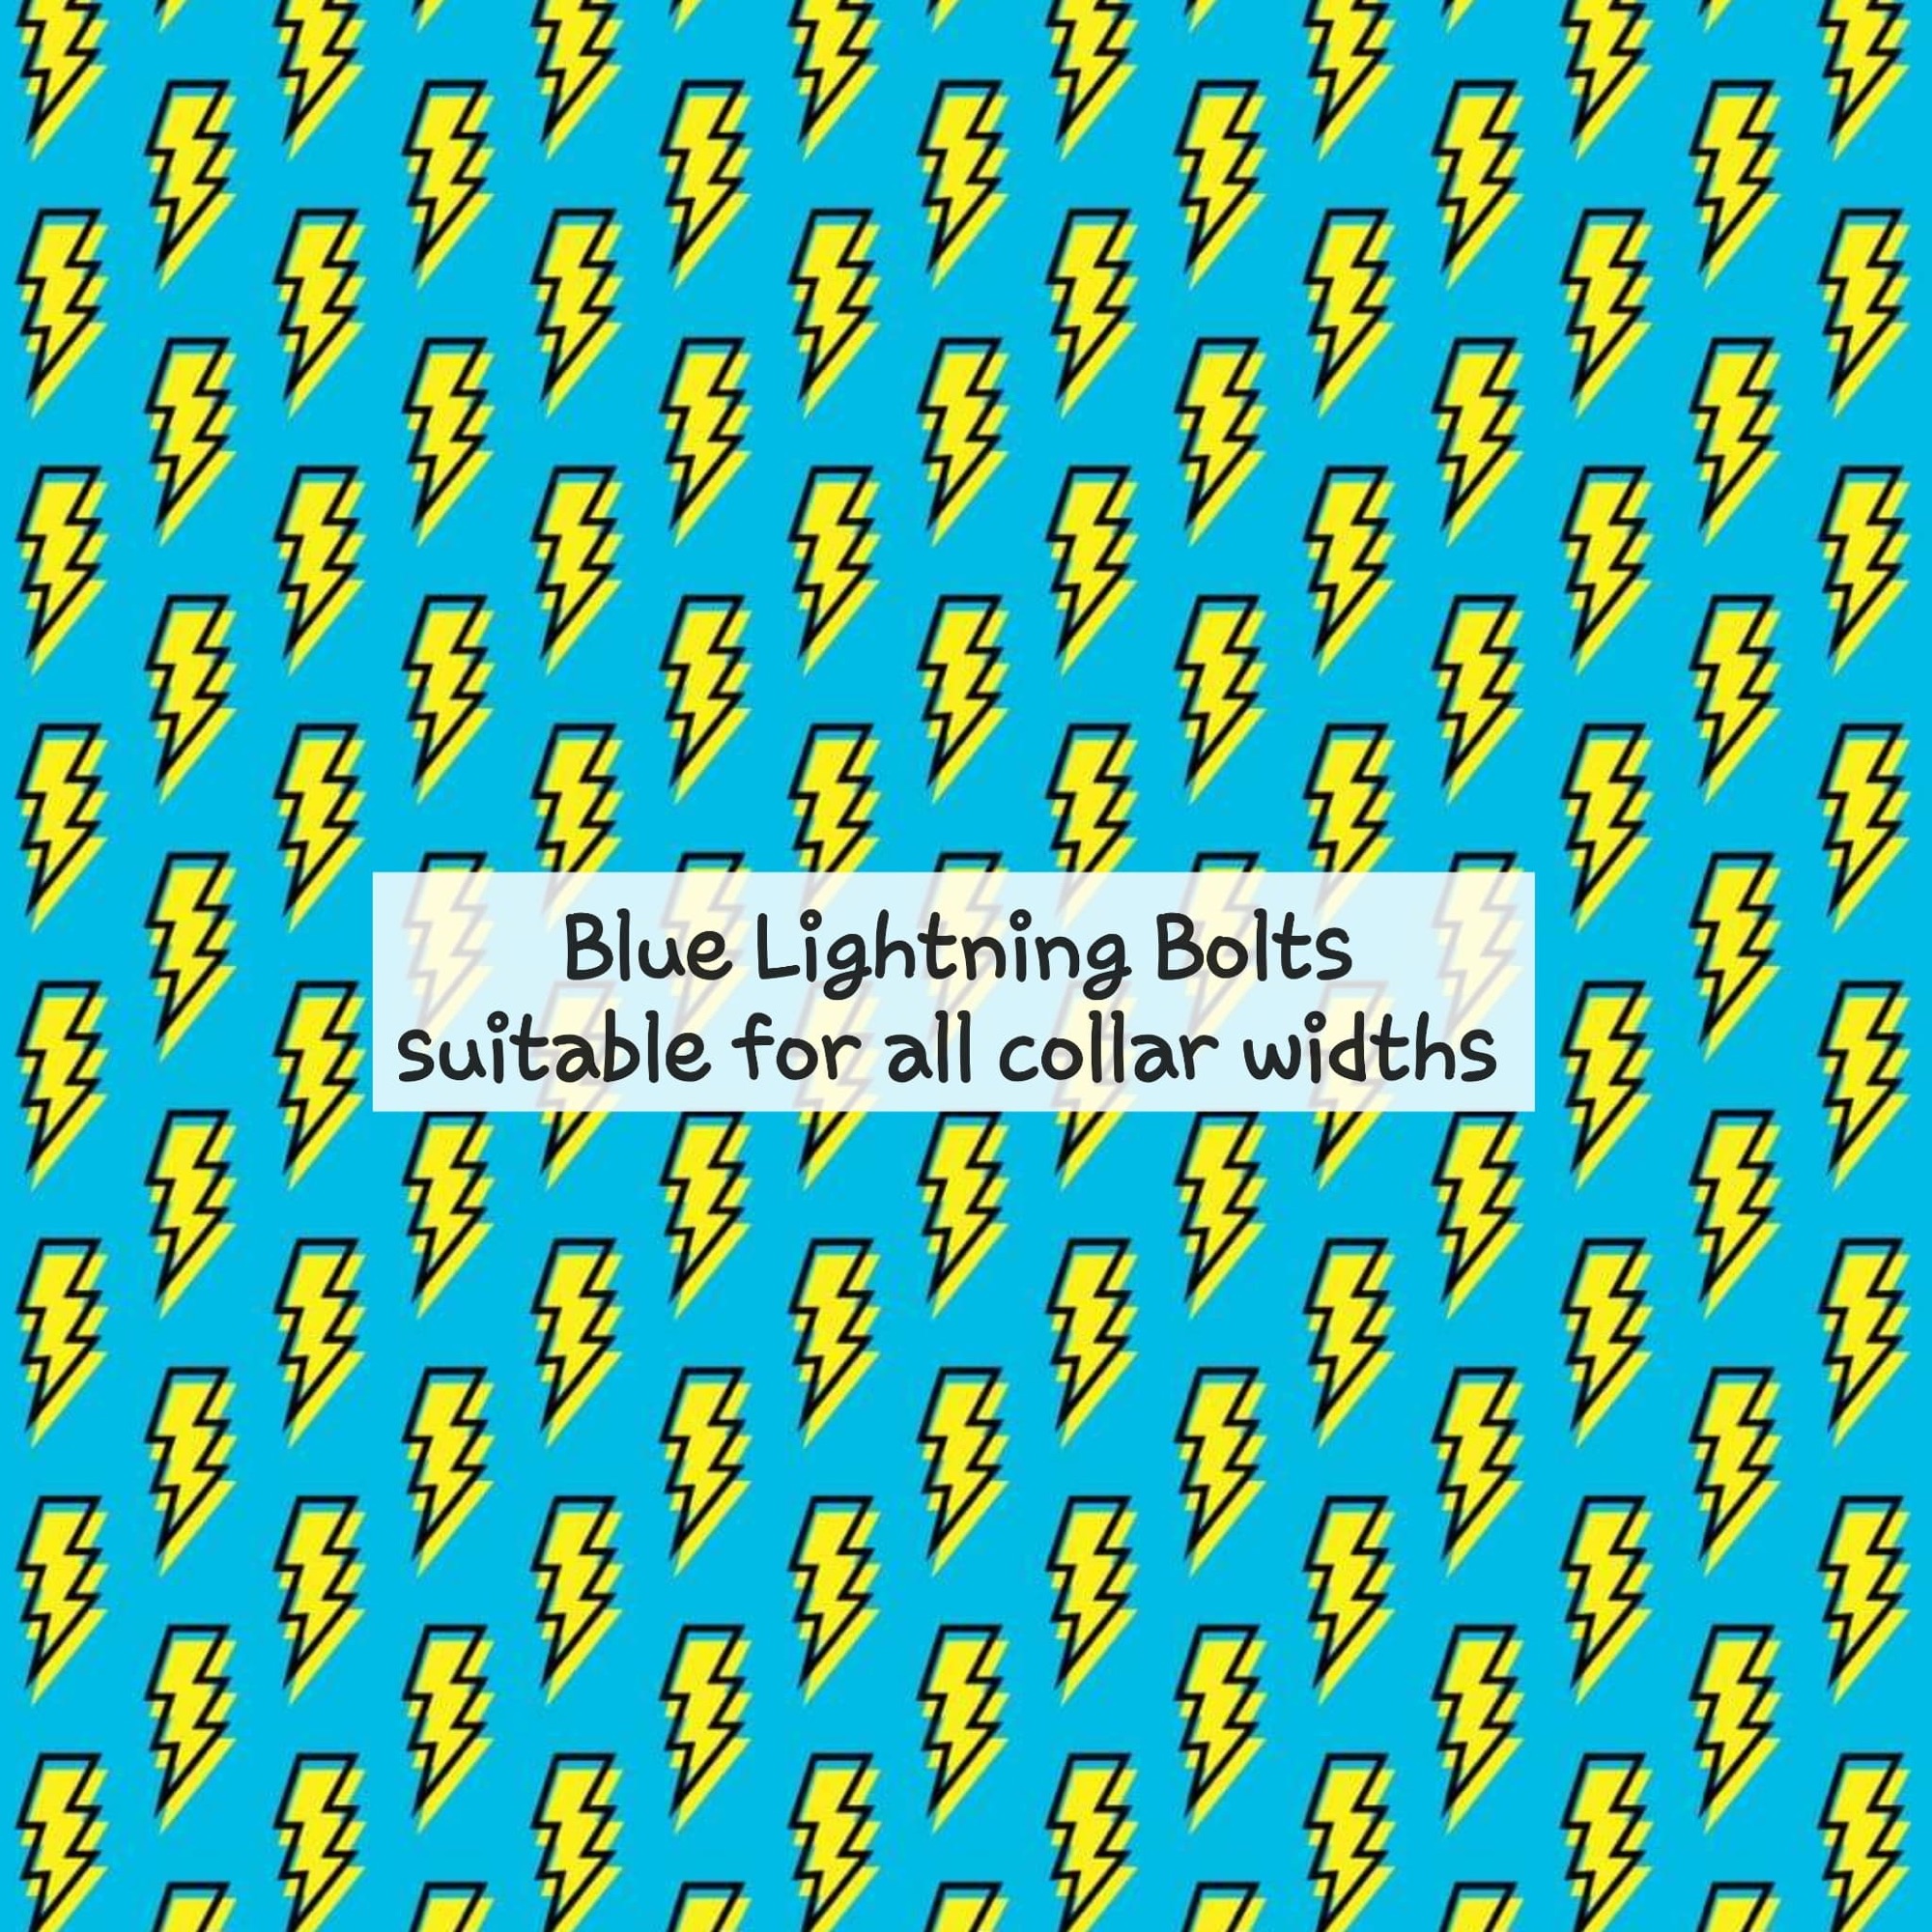 Blue Lightning Bolts